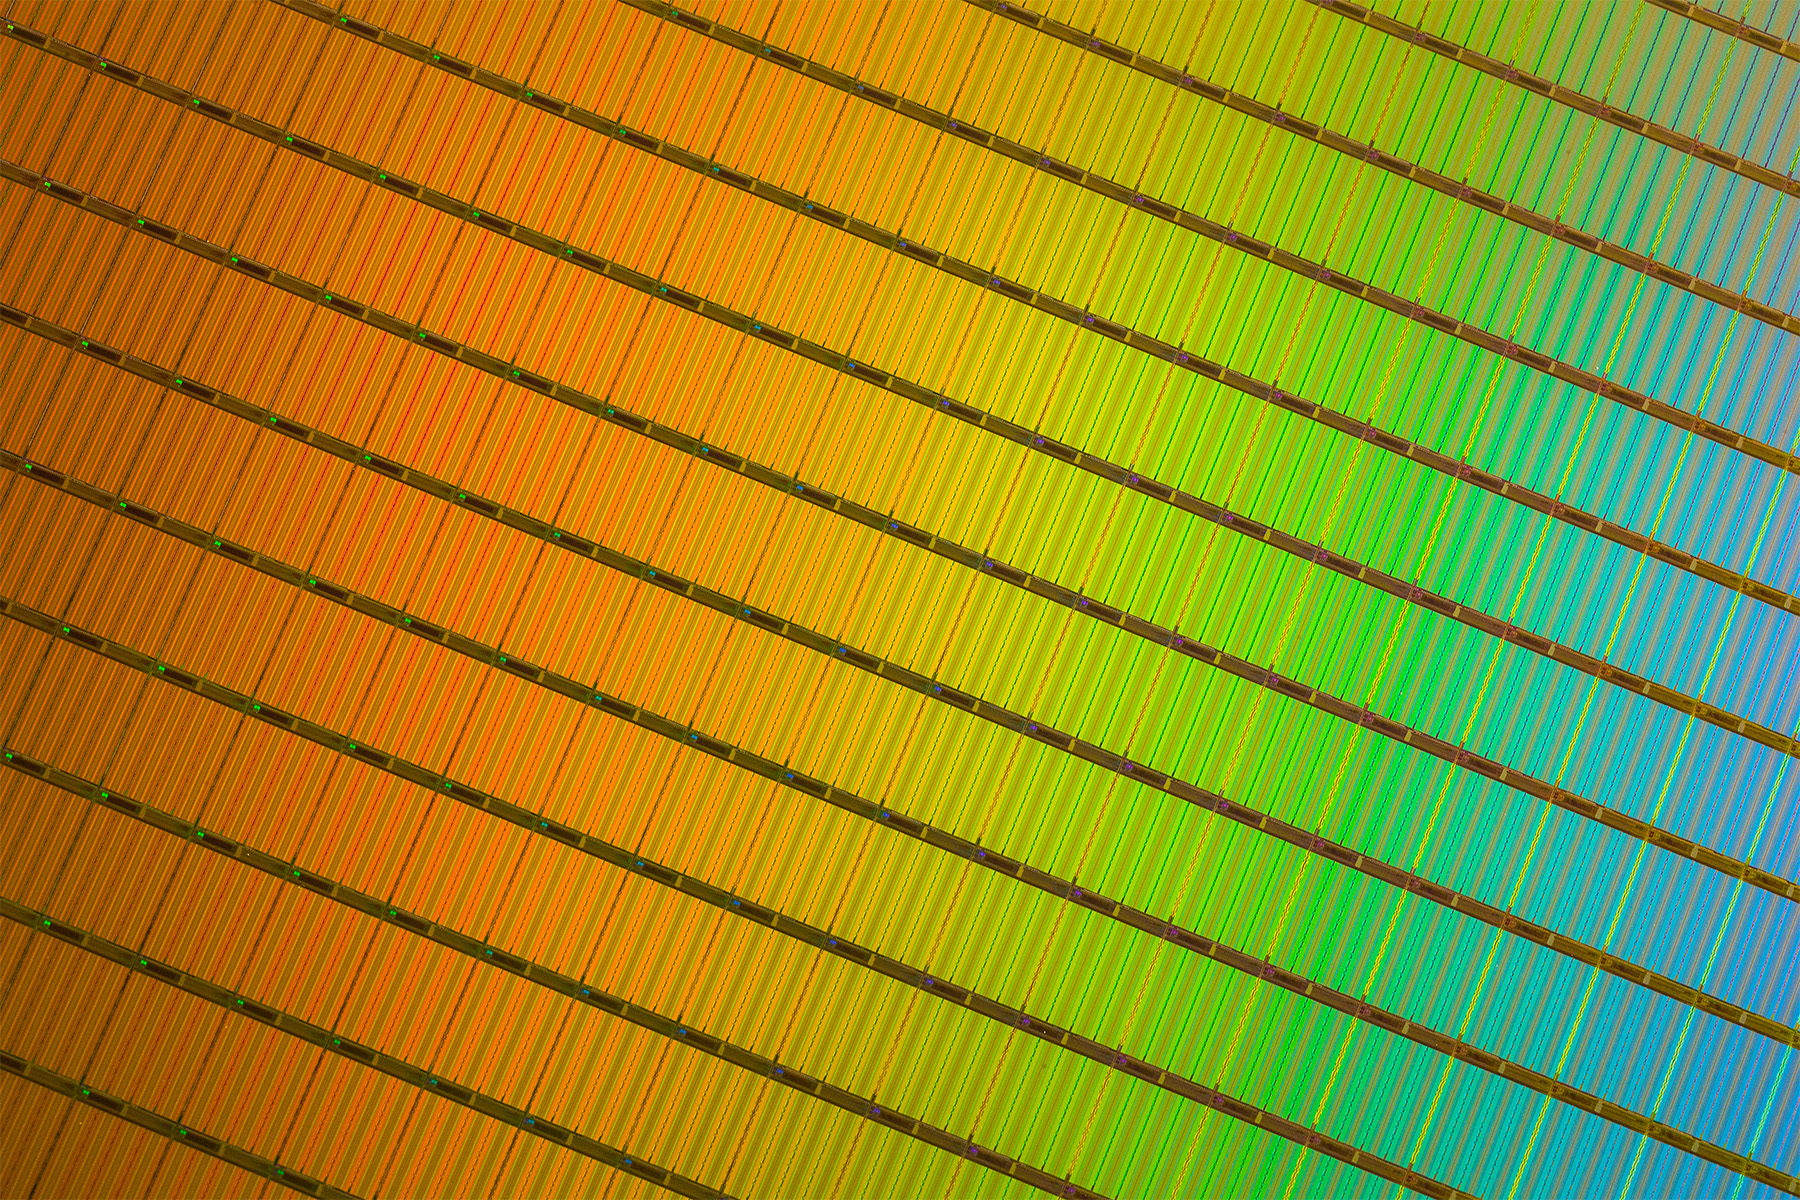 Immagine pubblicata in relazione al seguente contenuto: Intel e Micron promettono SSD meno costosi con i chip 3D NAND | Nome immagine: news22397_Intel-Micron-3D-NAND-Wafer-Close-Up_1.jpg